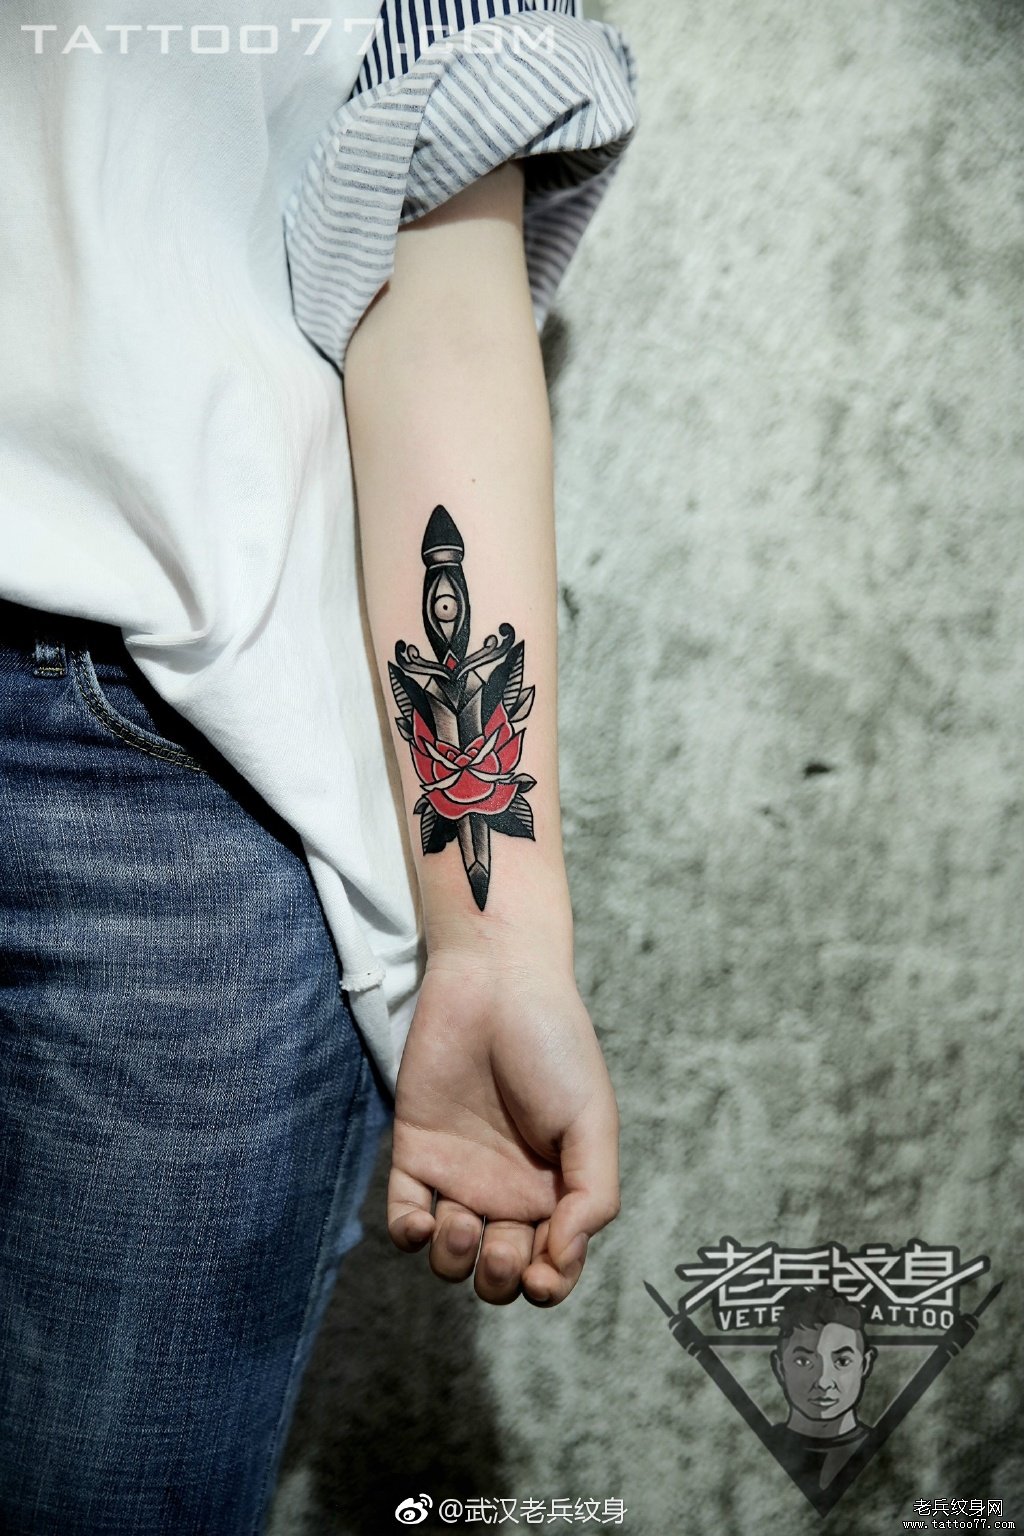 武汉妹子的手部匕首玫瑰花纹身图案作品